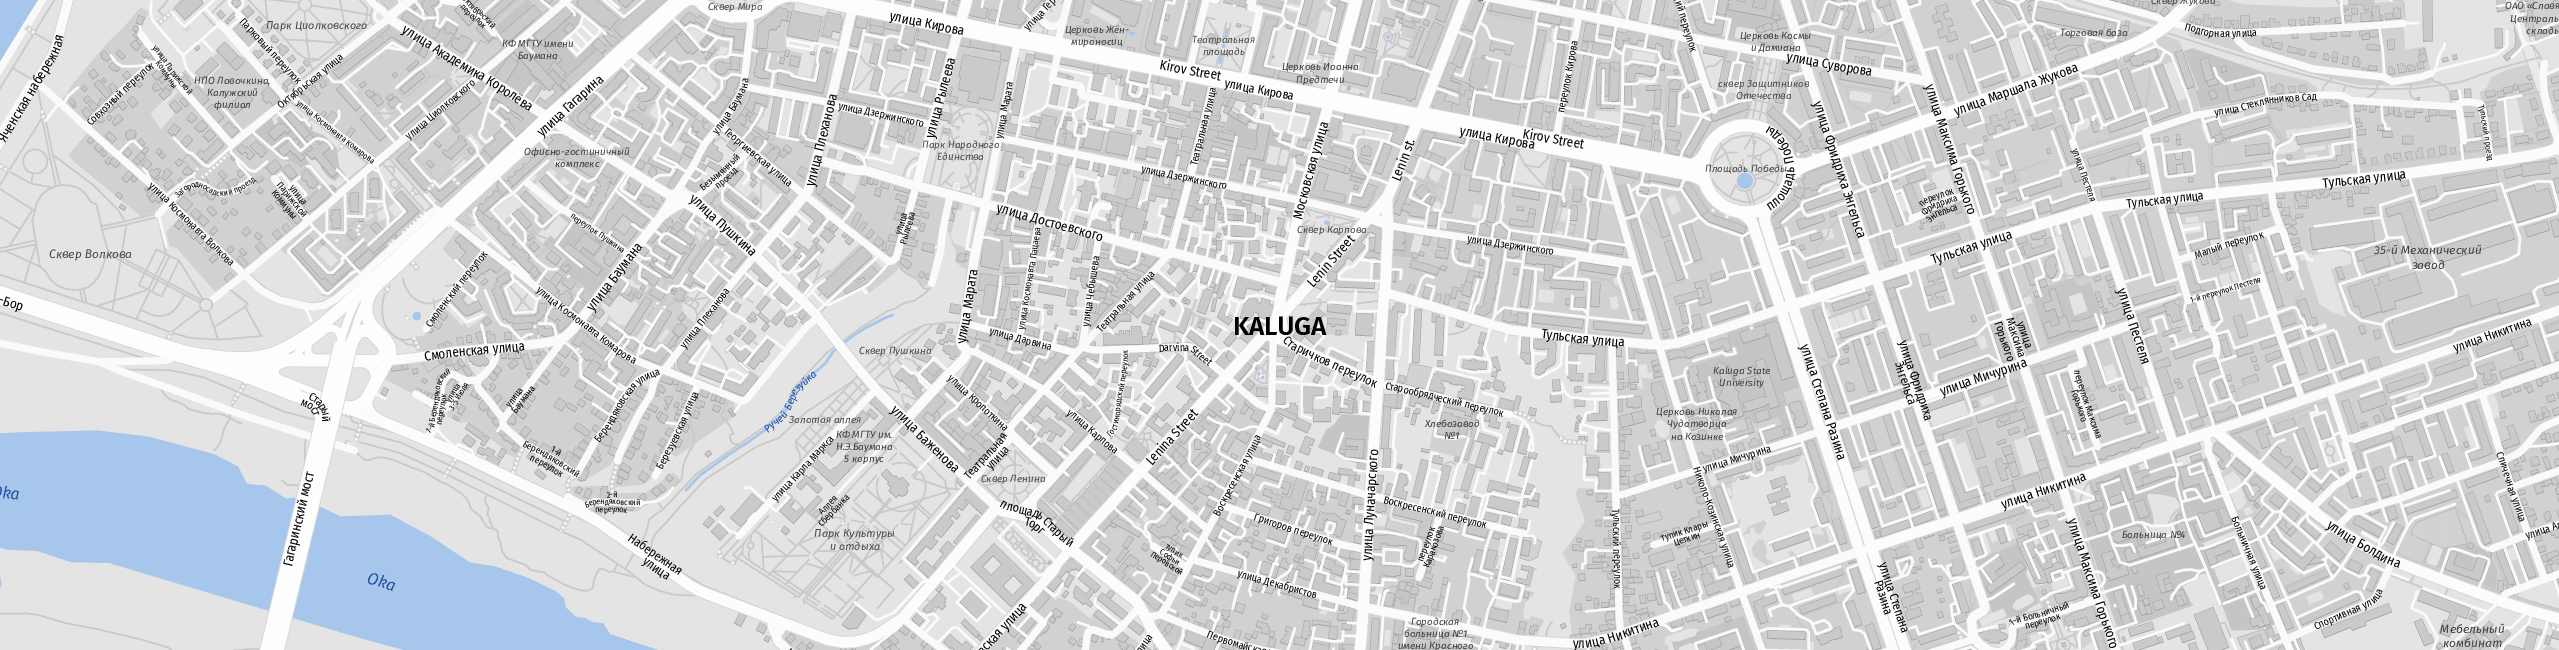 Stadtplan Kaluga zum Downloaden.